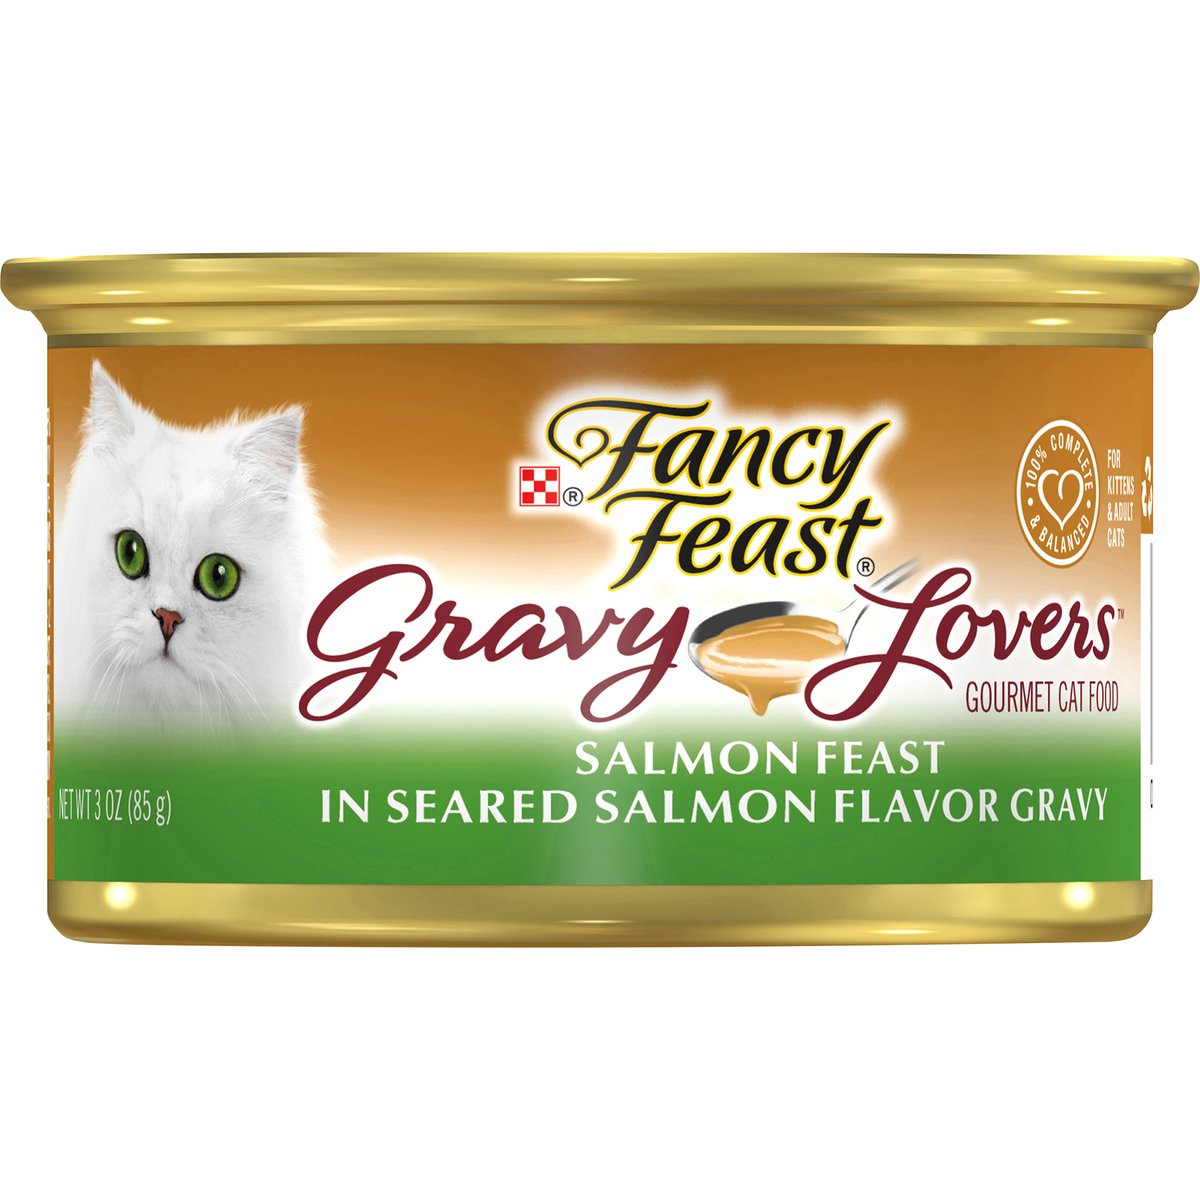 Purina Fancy Feast Gravy Lovers Salmon Feast In Seared Salmon Flavor Gravy Cat Food 85 g